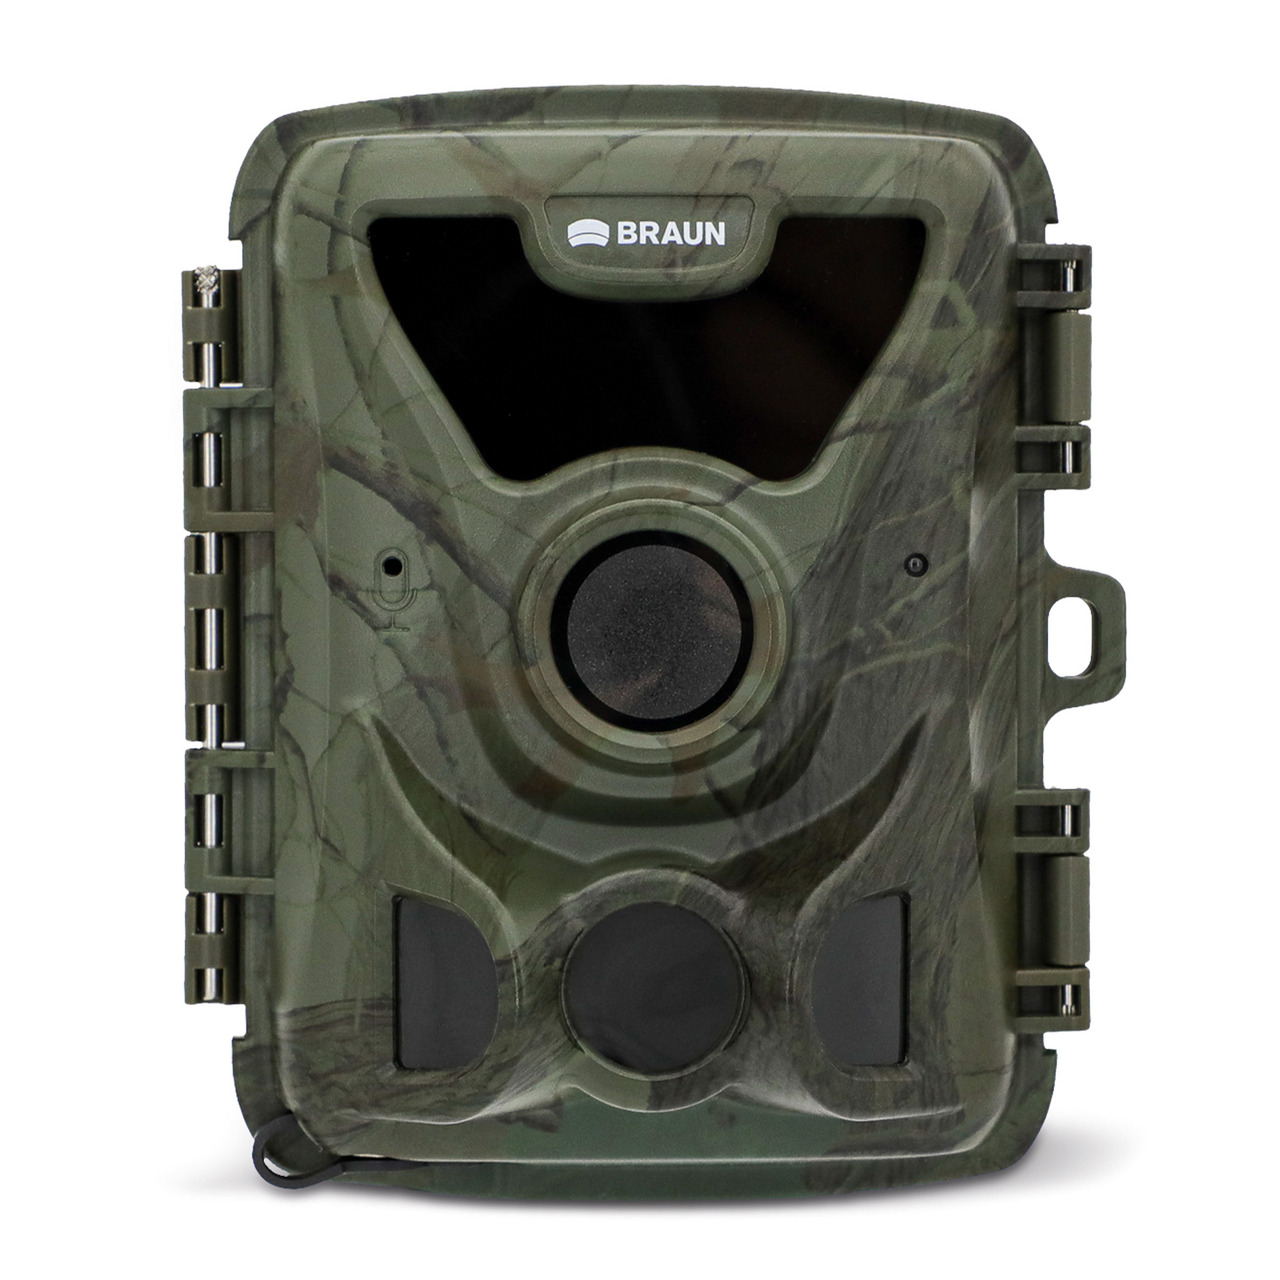 Braun Fotofalle - Wildkamera BLACK200A Mini- Full-HD- kompatibel mit 18650 Akkus- IP66 unter Sicherheitstechnik